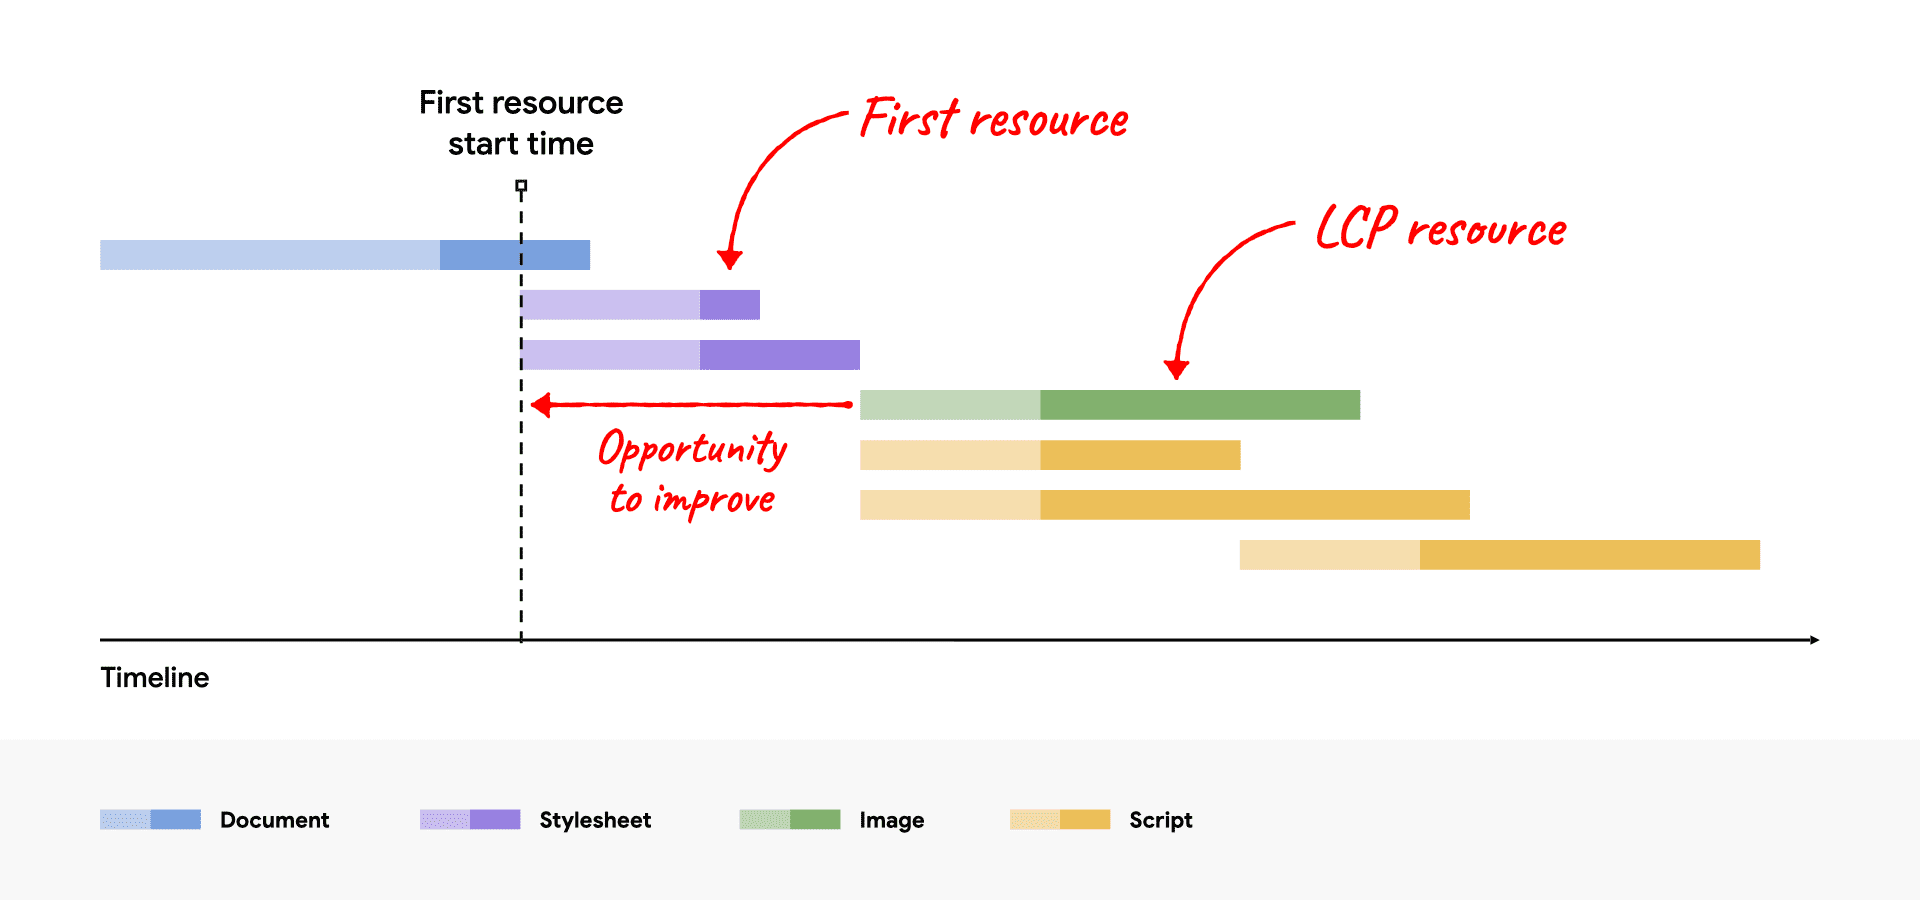 Netzwerk-Wasserfalldiagramm, das zeigt, dass die LCP-Ressource nach der ersten Ressource beginnt und Verbesserungsmöglichkeiten zeigt